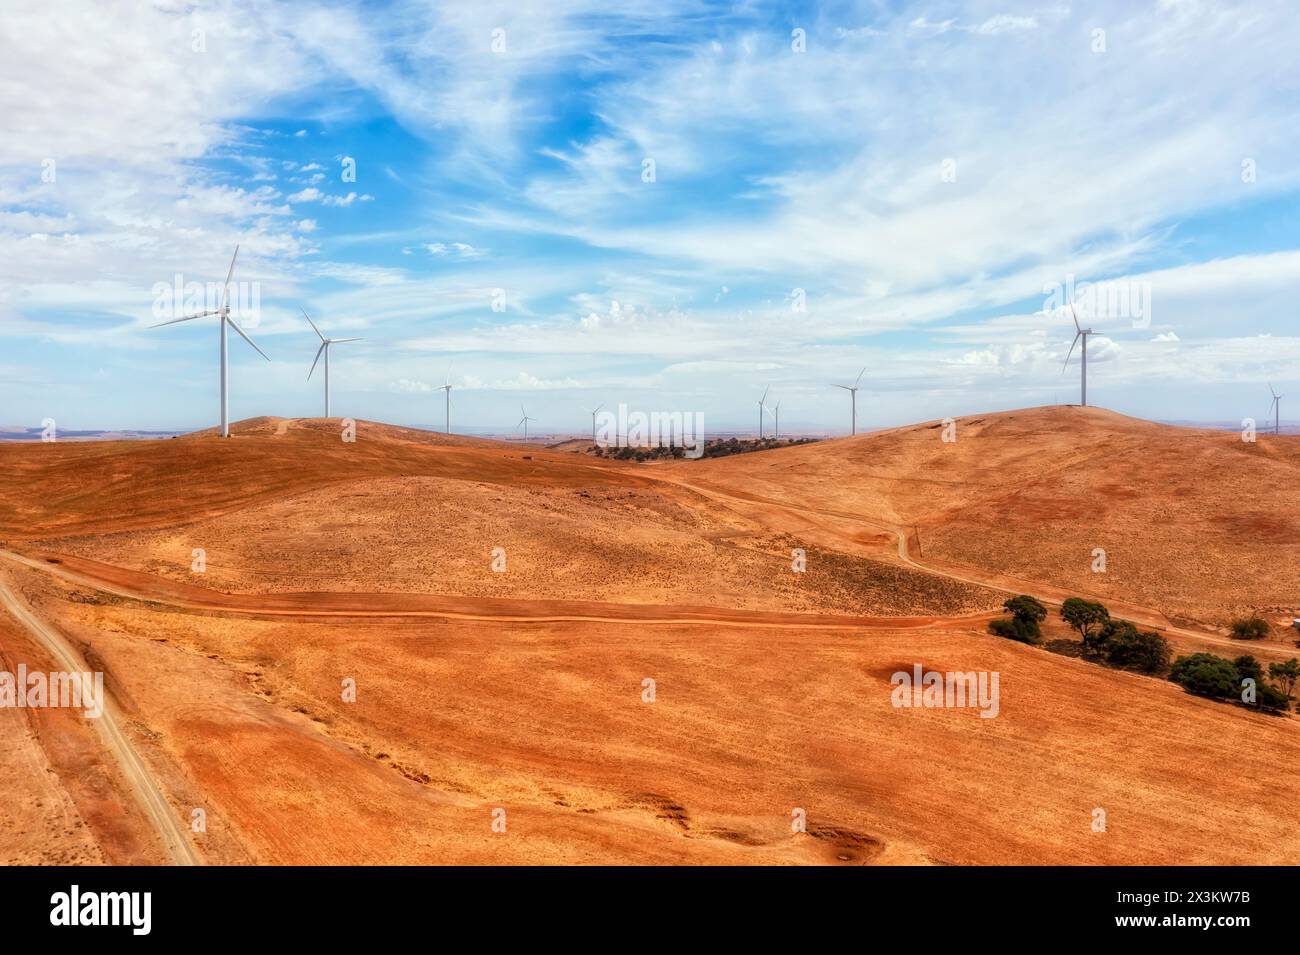 Turbine eoliche sulle cime delle colline nella remota Australia meridionale che generano energia rinnovabile dall'energia eolica. Foto Stock